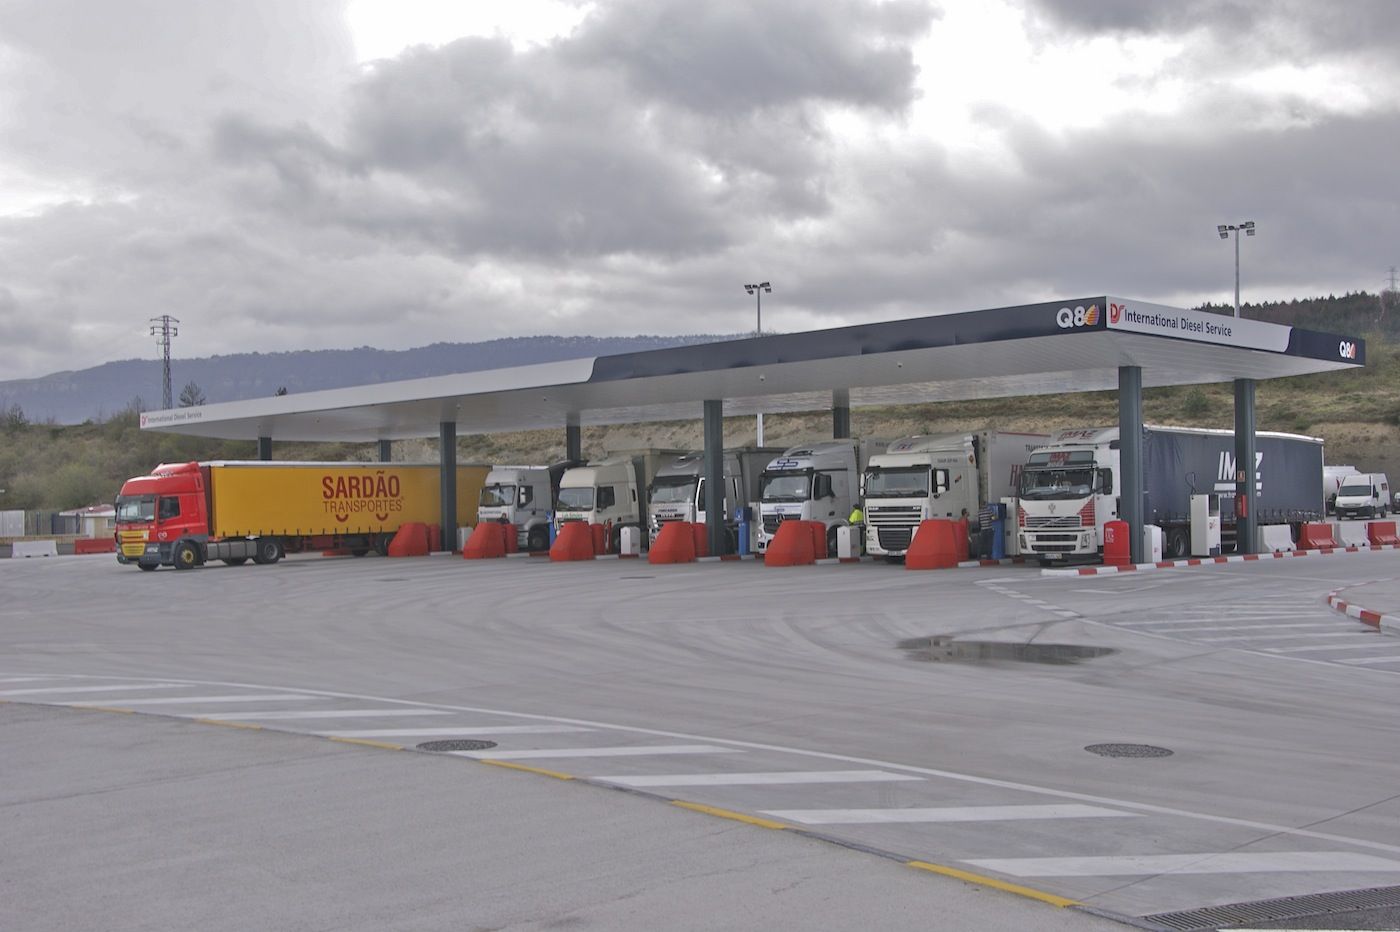 Camiones repostando combustible en una EESS estacion de servicio